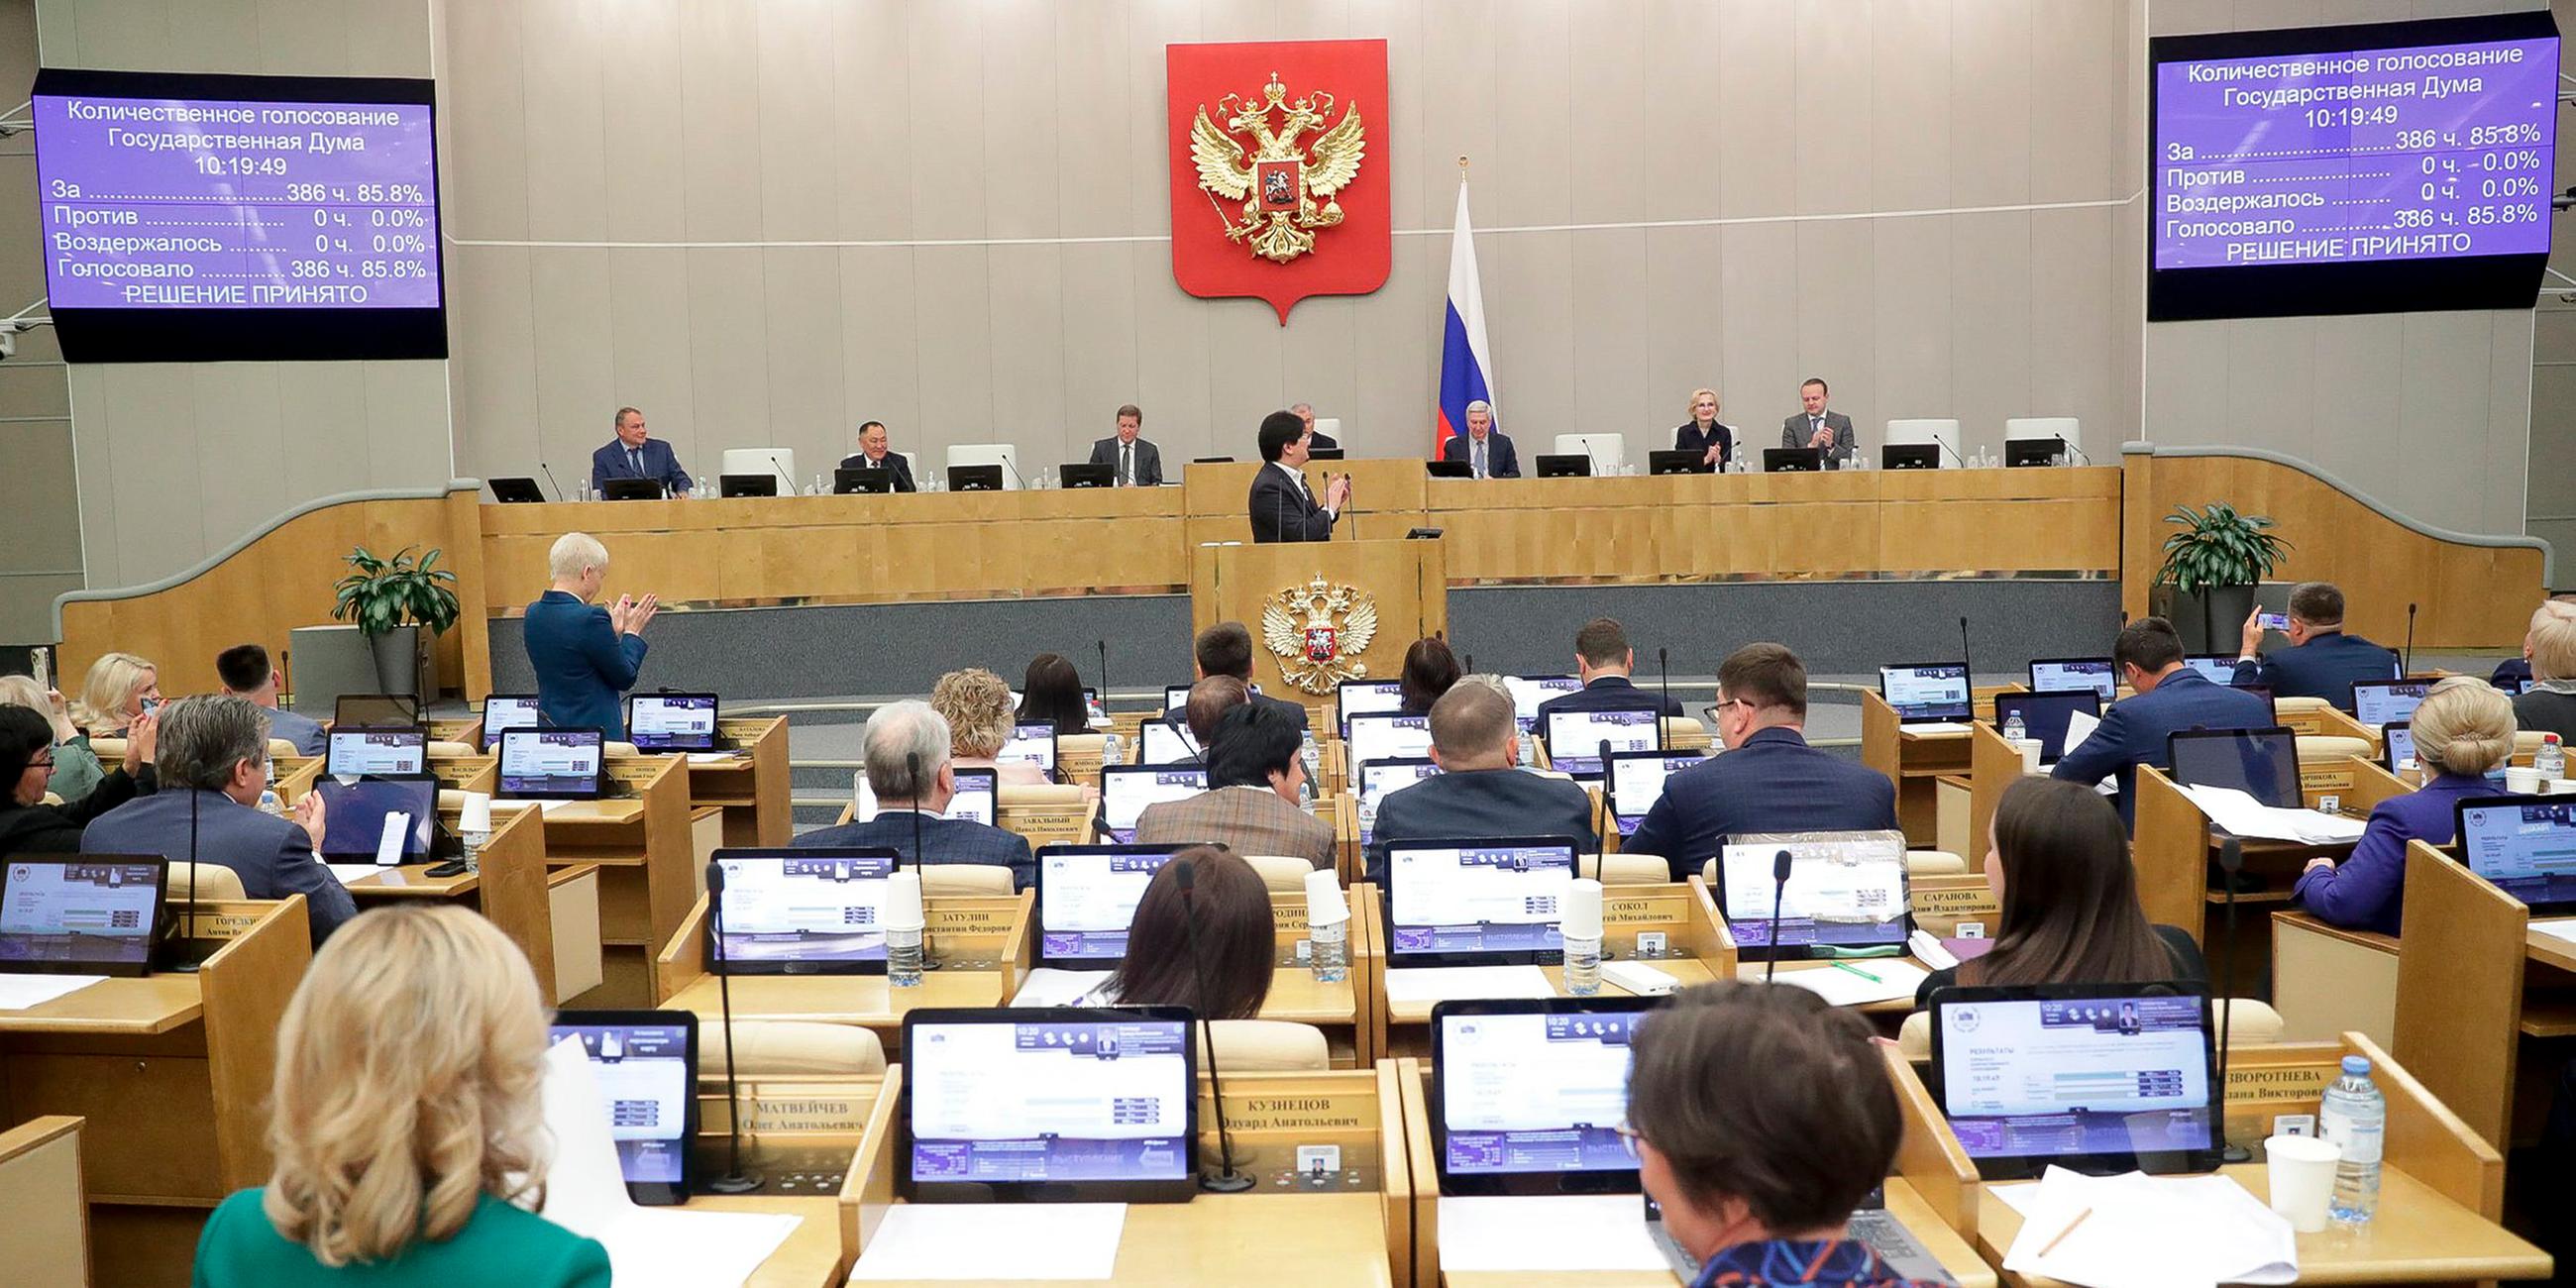 Russland, Moskau: Russlands Parlament verabscjiedet ein Gesetz zum Verbot von "Geschlechtsumwandlungen".